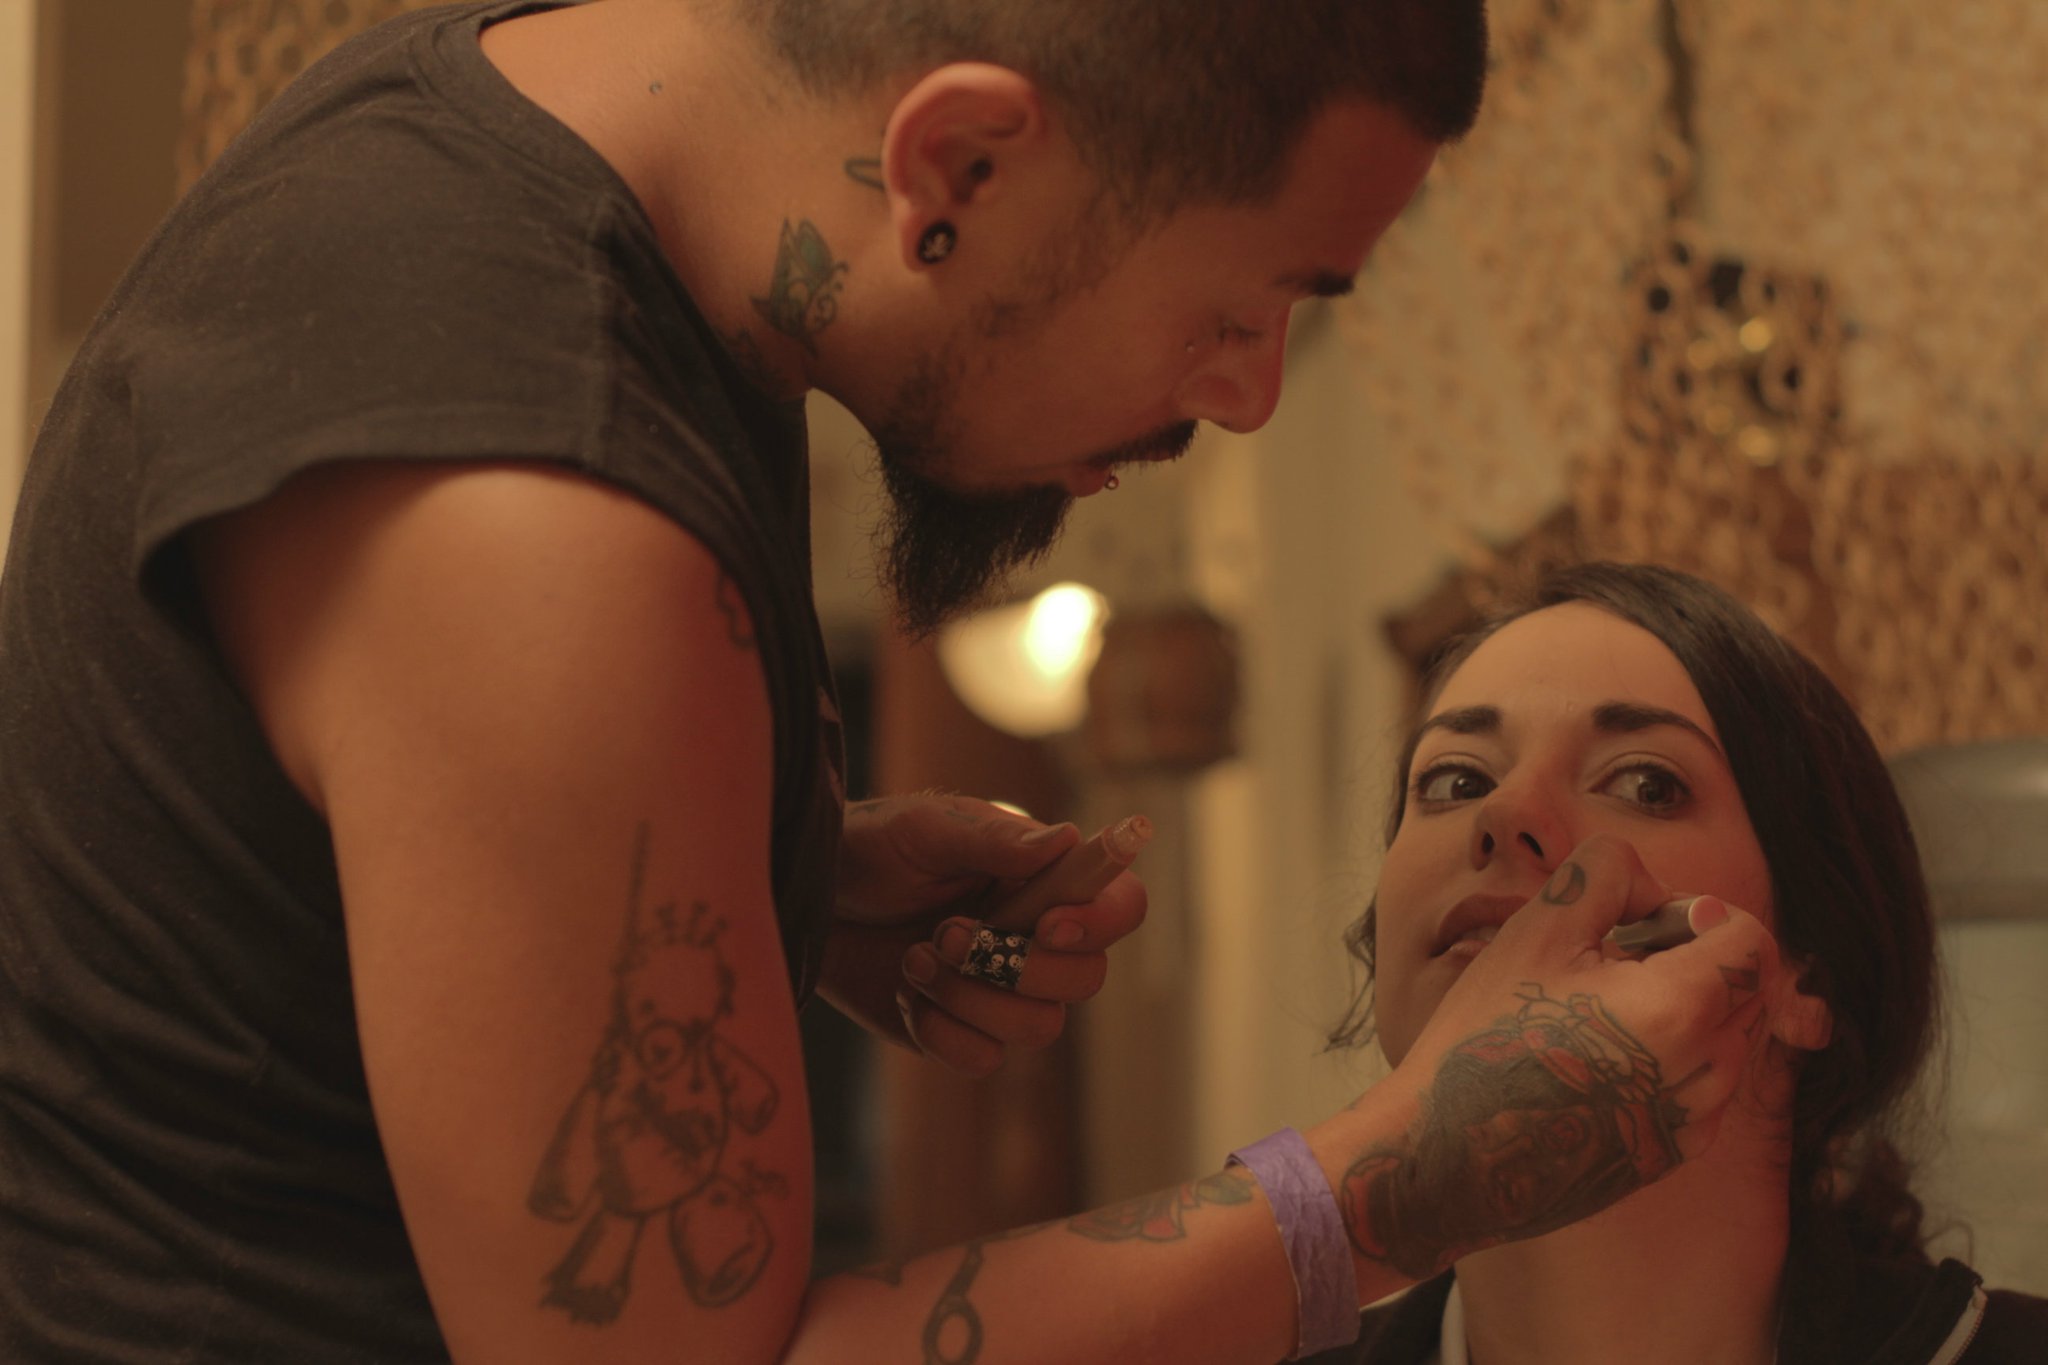 makeup artist Keifla Antonio makes Anna into Sofia.